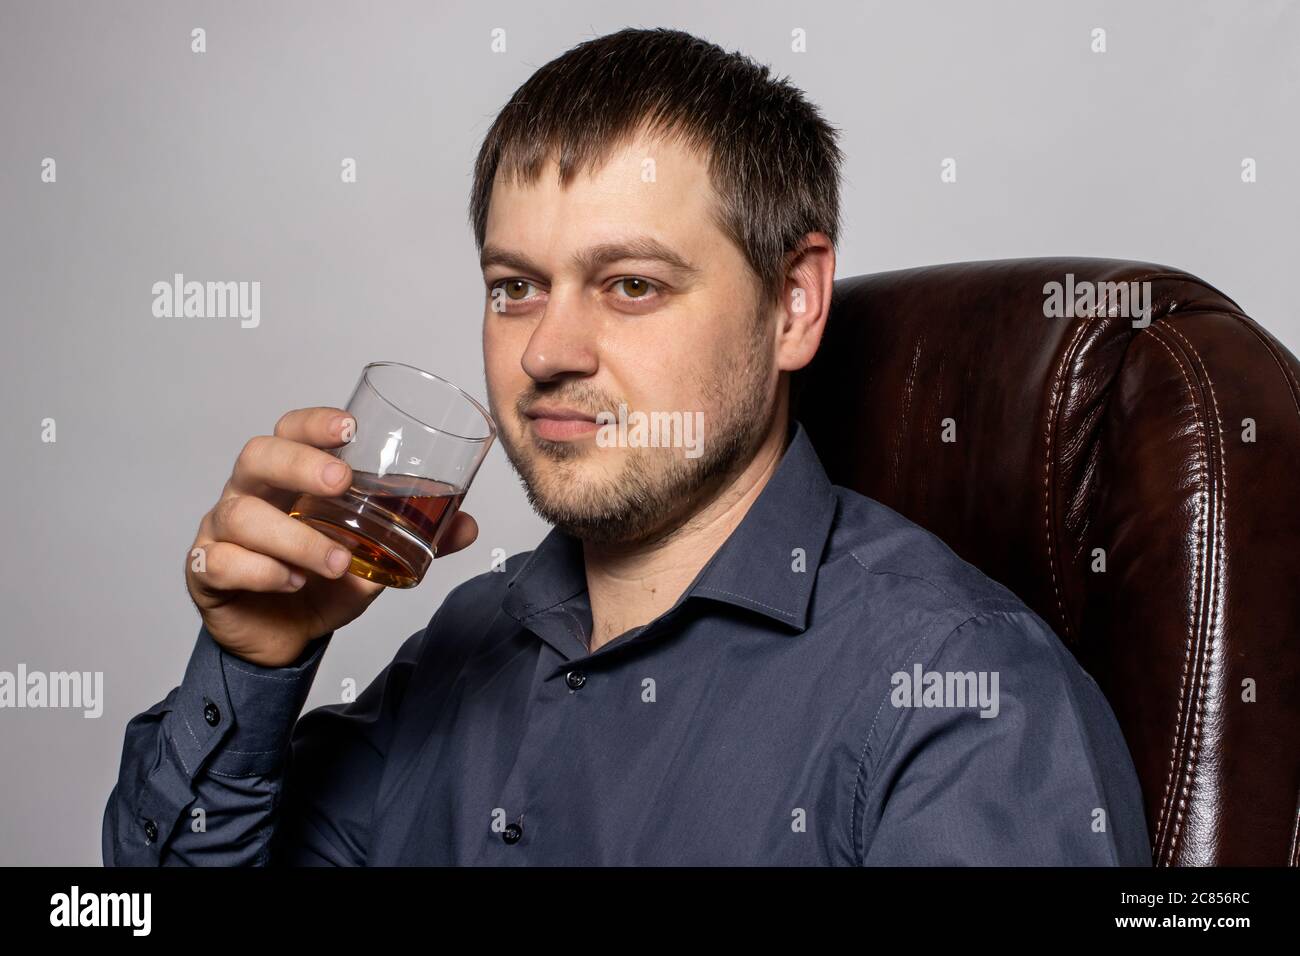 Un beau jeune homme de 30-35 ans dans une chemise est assis sur un fauteuil en cuir marron et tient un verre de whisky dans la main. Banque D'Images